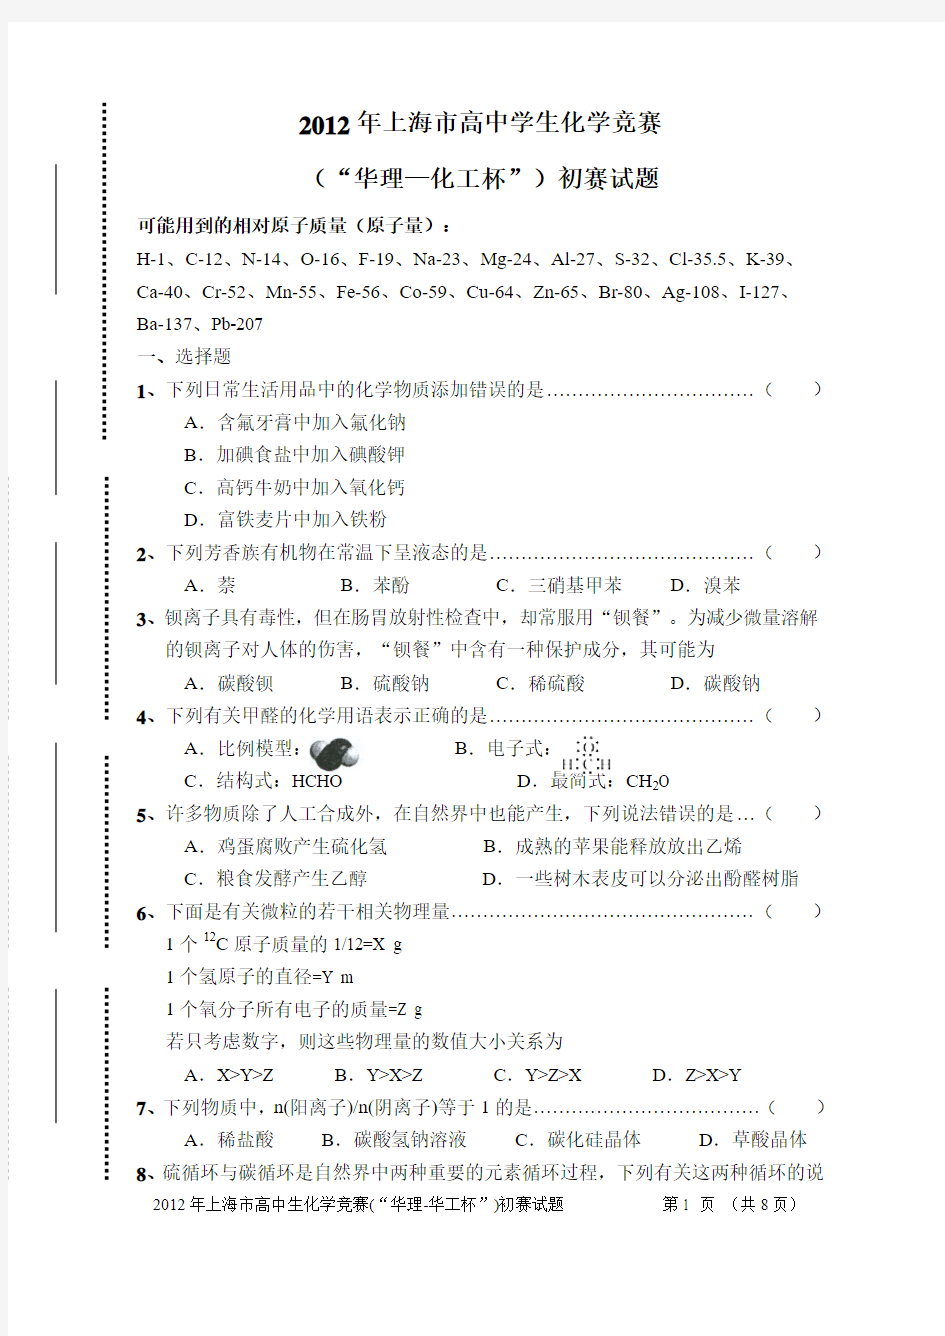 2012年上海市高中学生化学竞赛暨华理-化工杯初赛试题和答案(word)